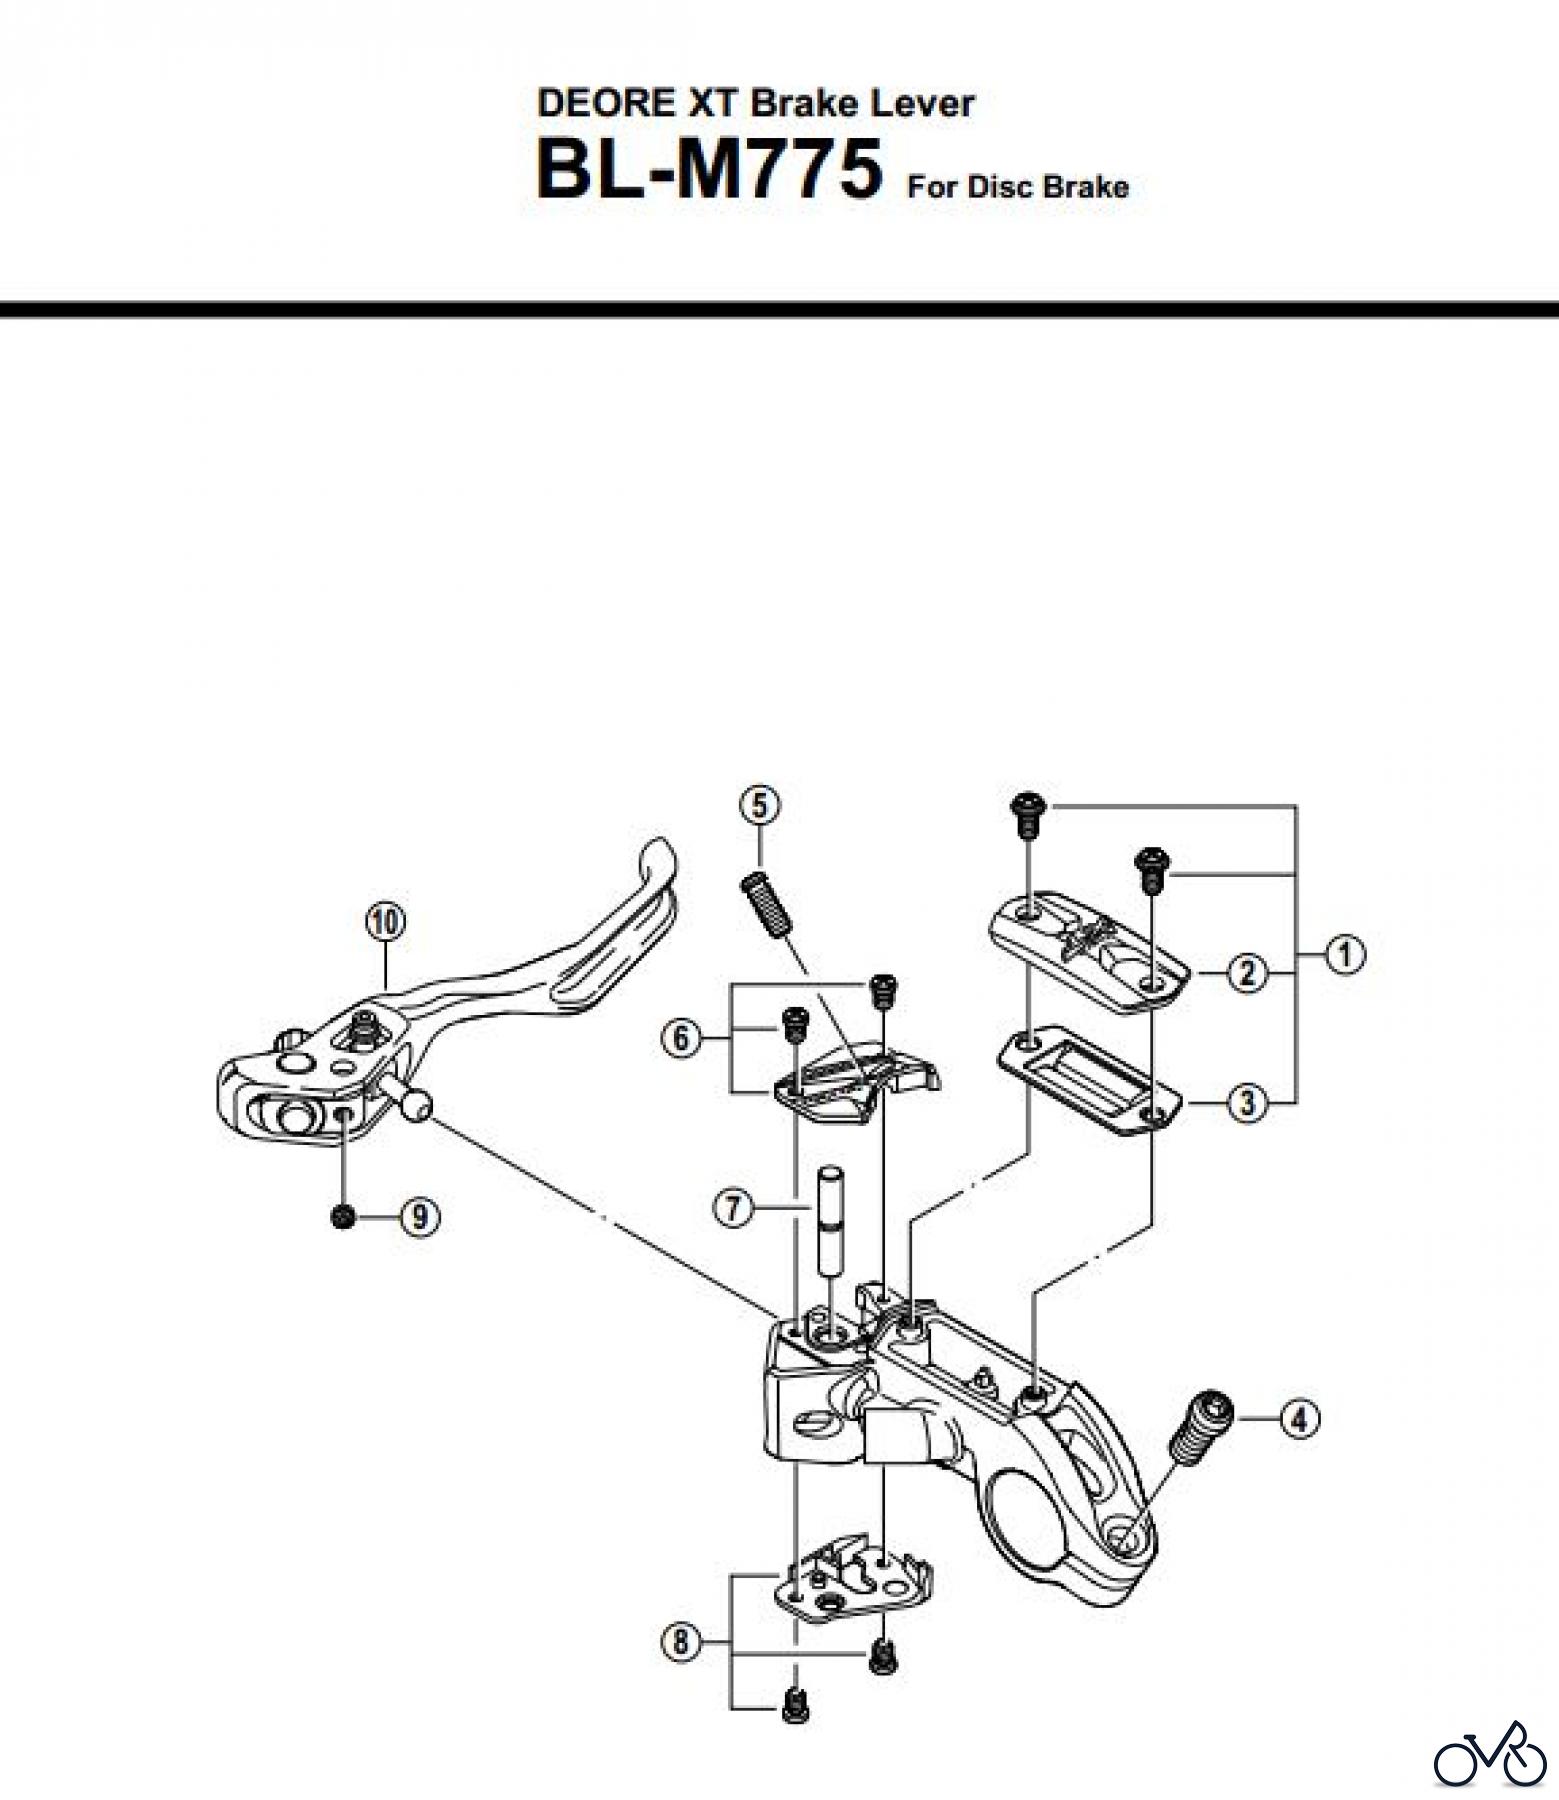  Shimano BL Brake Lever - Bremshebel BL-M775-2689